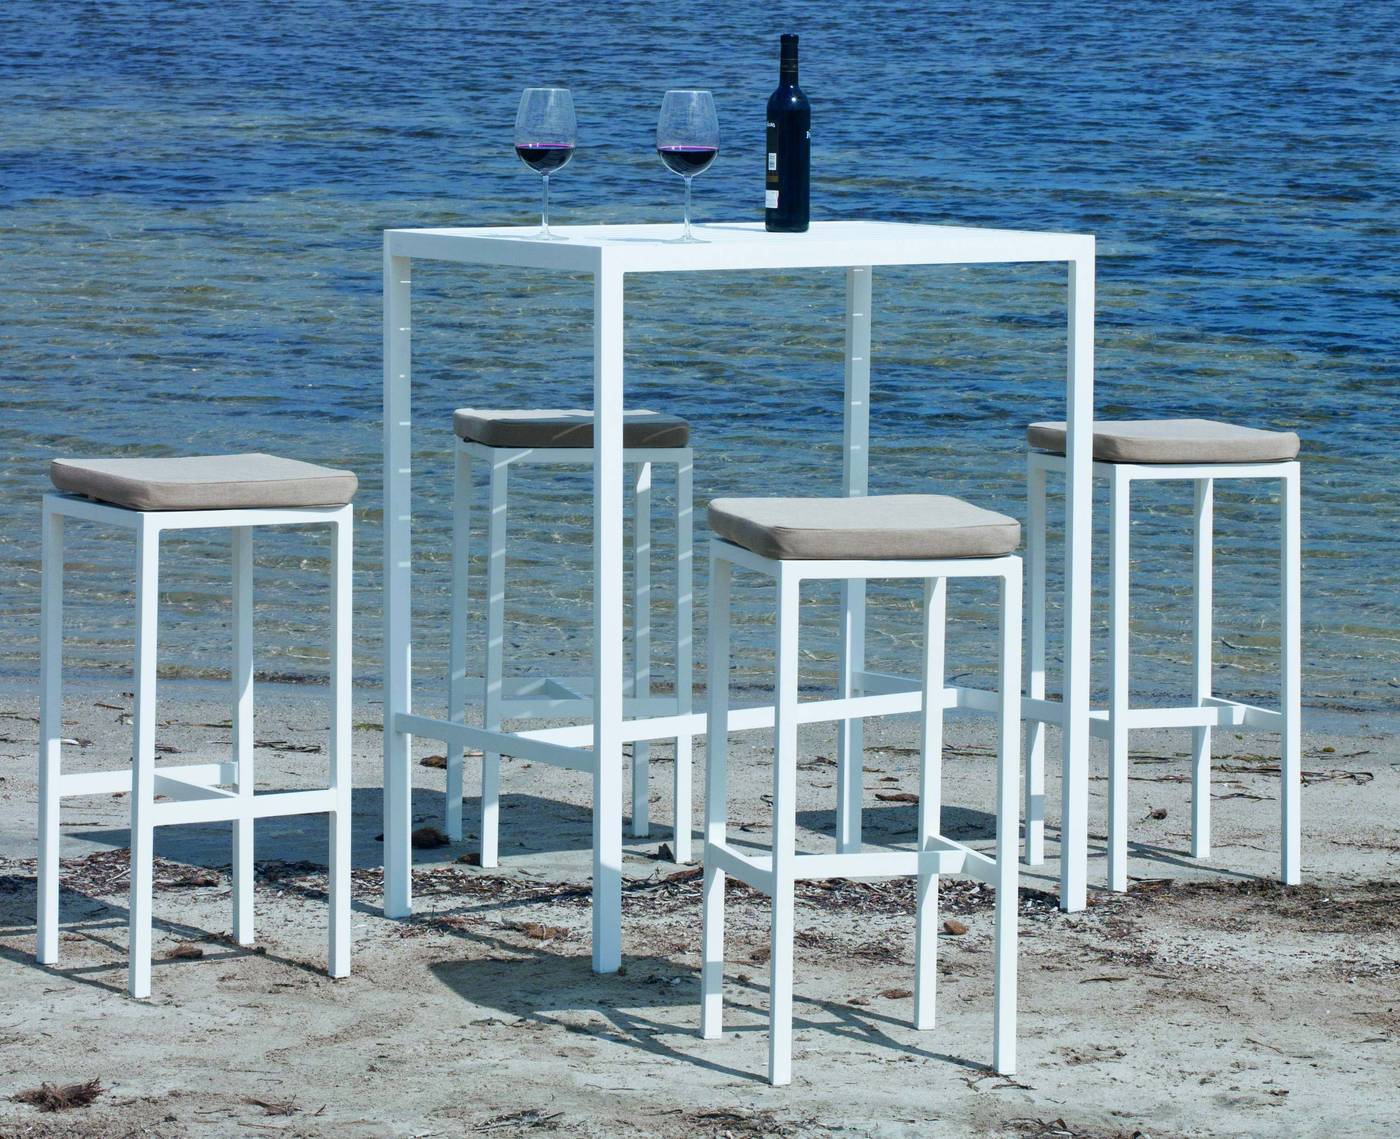 Conjunto aluminio: mesa bar rectangular de 100 cm. con tablero de lamas de aluminio y 4 taburetes sin respaldo de aluminio. Disponible en color blanco, antracita, champagne, plata o marrón.